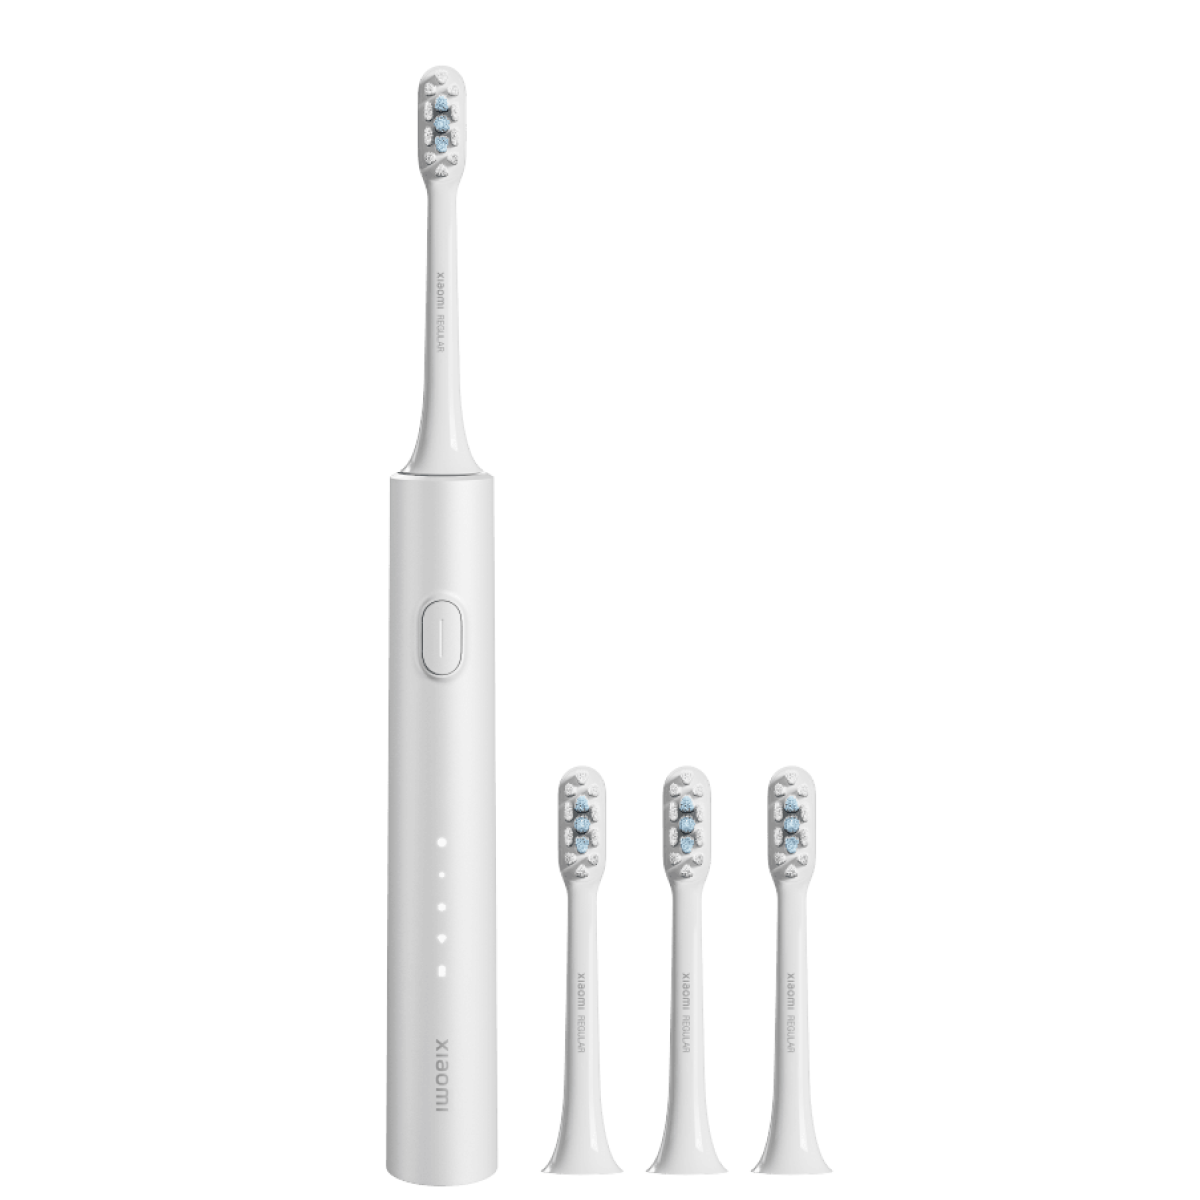 Электрическая зубная щетка Xiaomi Electric Toothbrush T302 серебристая электрическая зубная щетка infly sonic electric toothbrush t03s purple